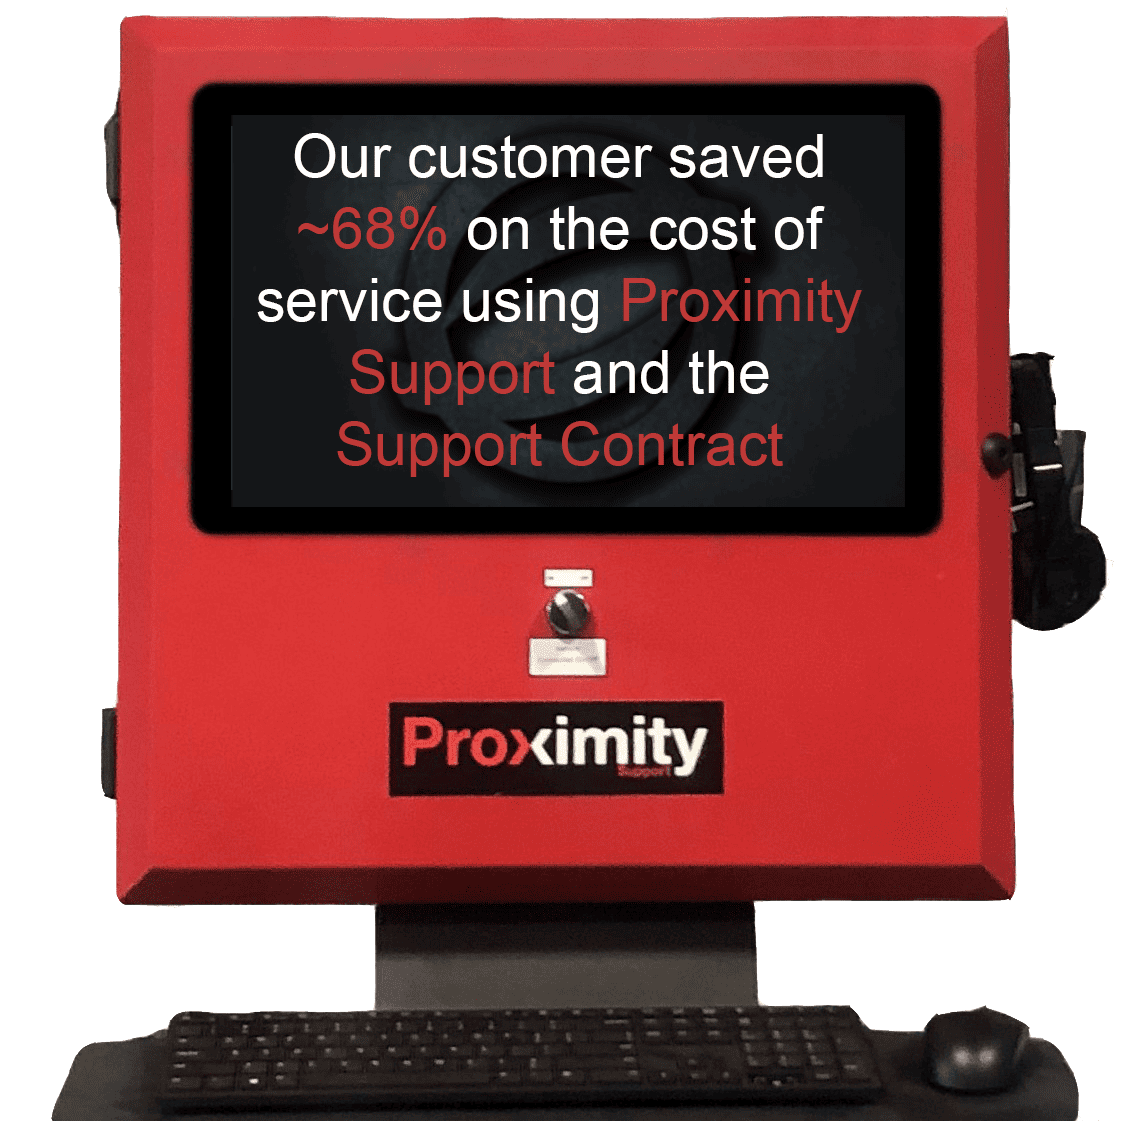 Panel de Soporte de Proximidad de BOS con texto en pantalla que dice: &quot;Nuestro cliente ahorró ~68% en el coste del servicio utilizando el Soporte de Proximidad y el Contrato de Soporte&quot;.